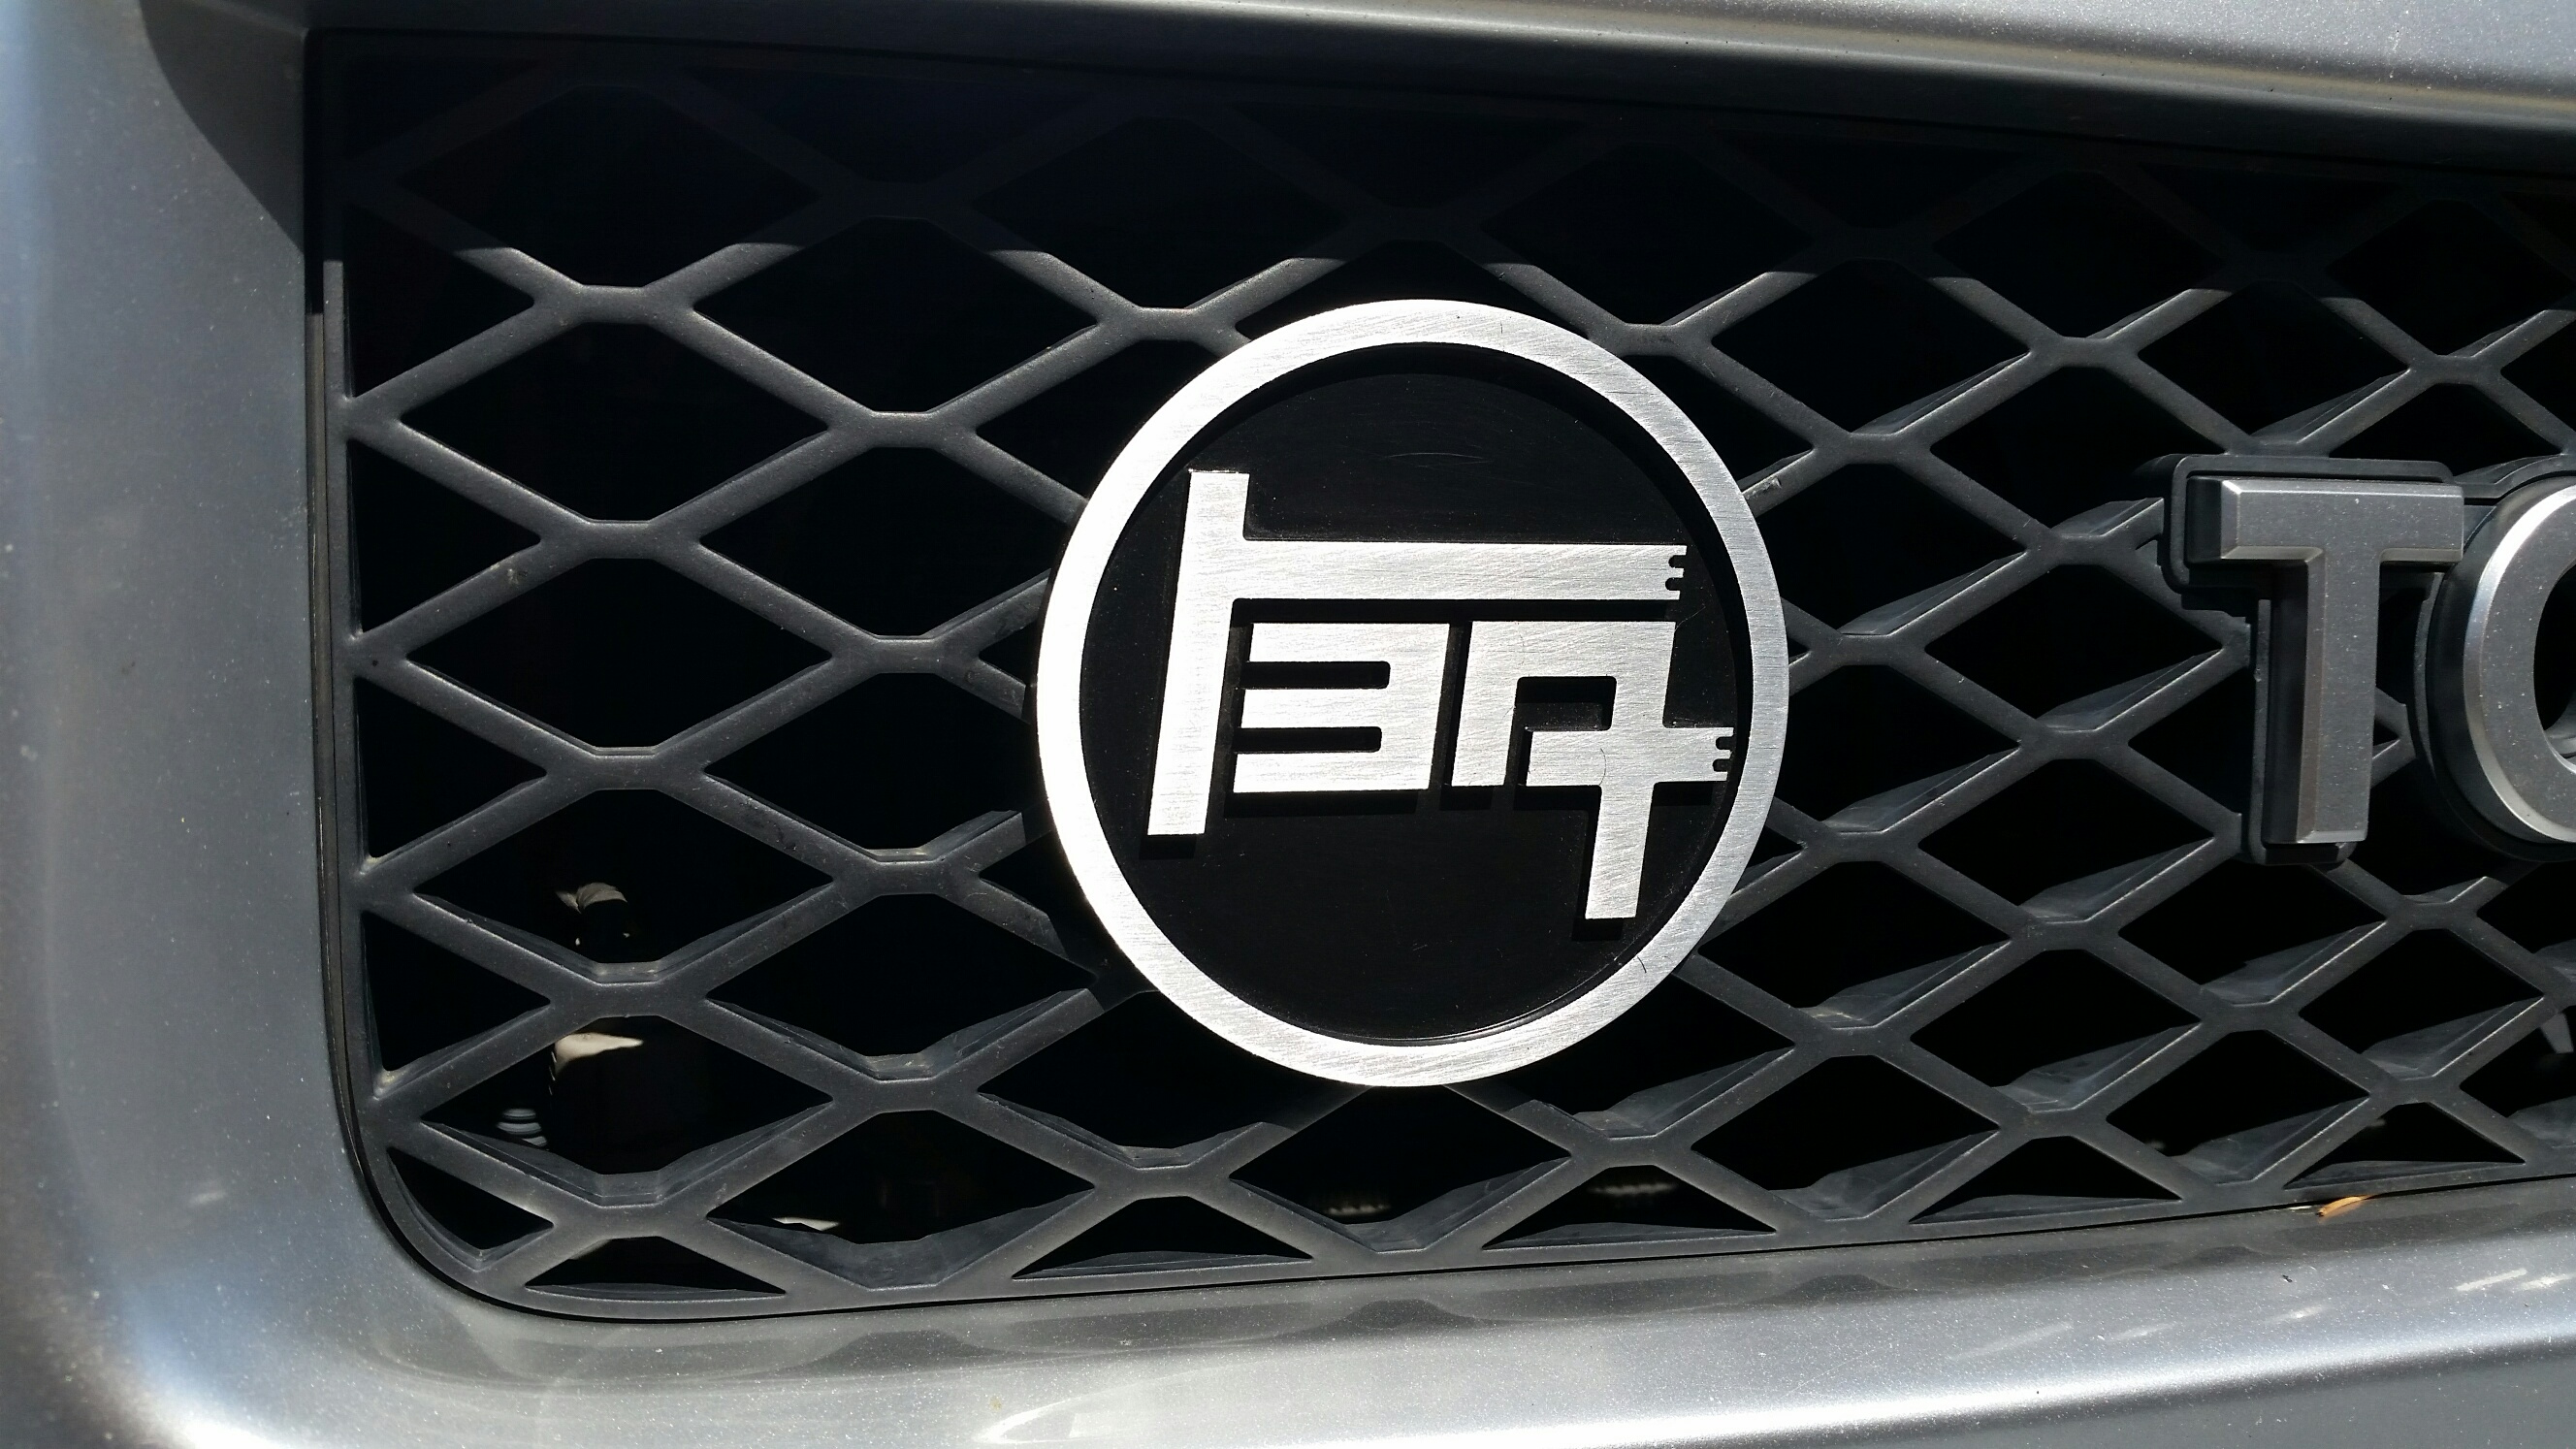 High Miles Badge Emblem #100K Fits On:Toyota 4Runner Pro TEQ & FJ Cruiser TRD 